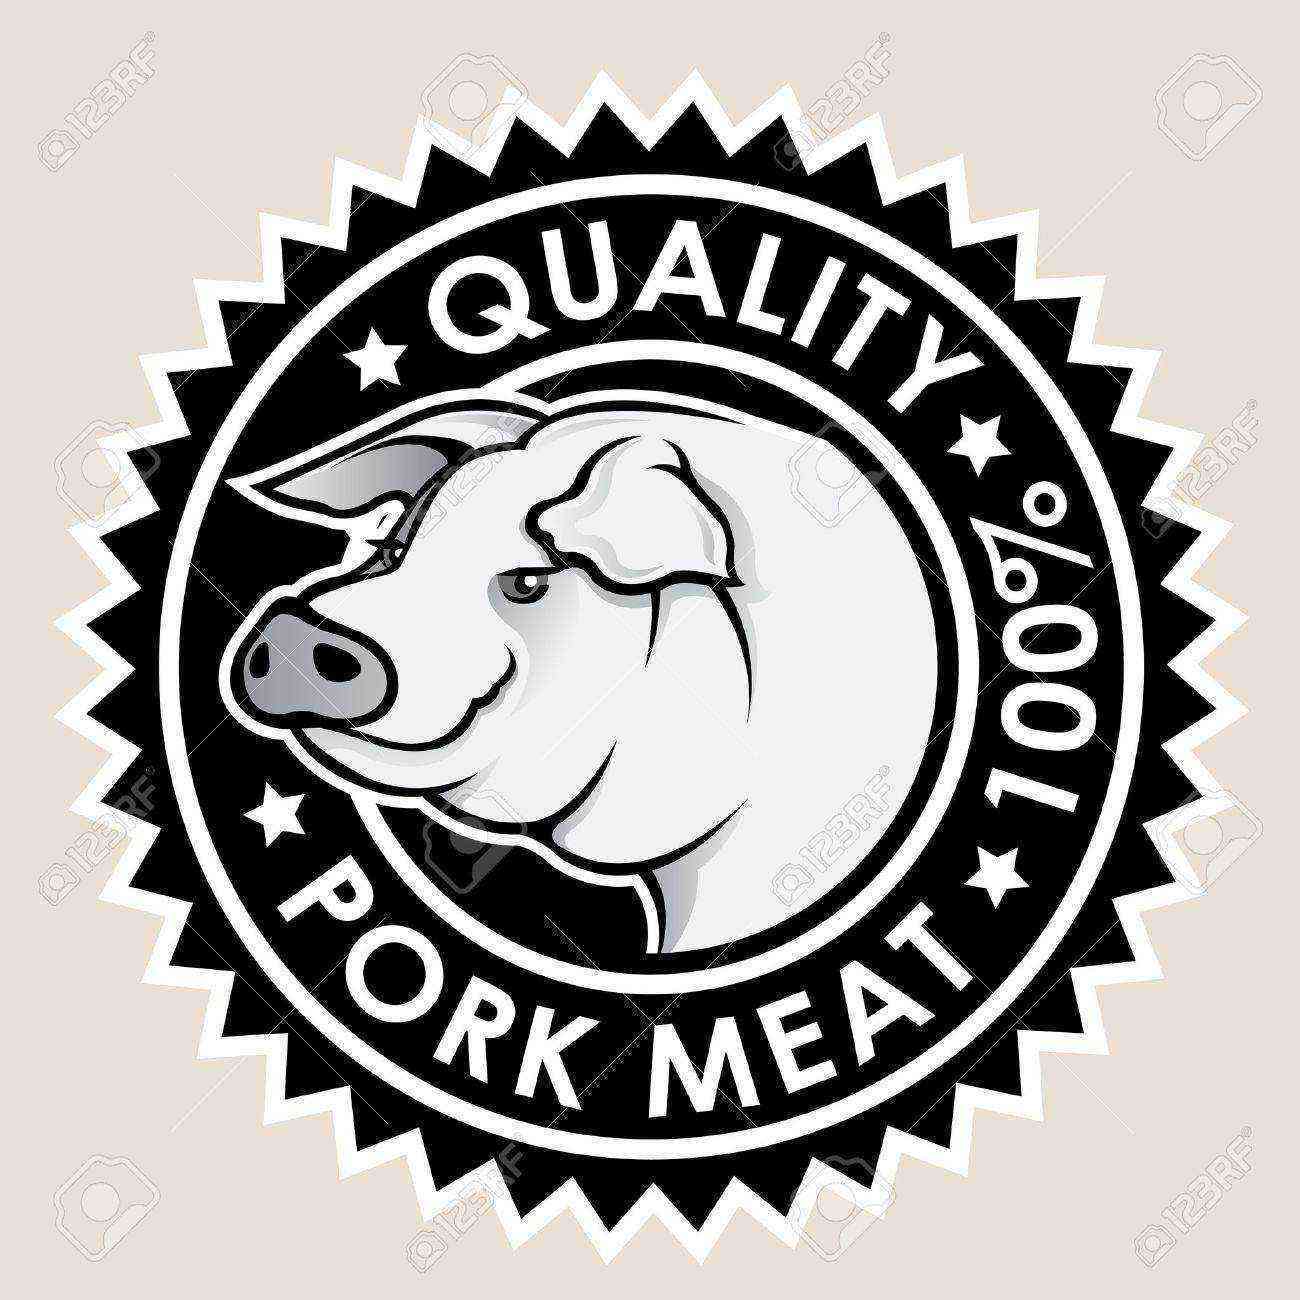 Svinekød kvalitet